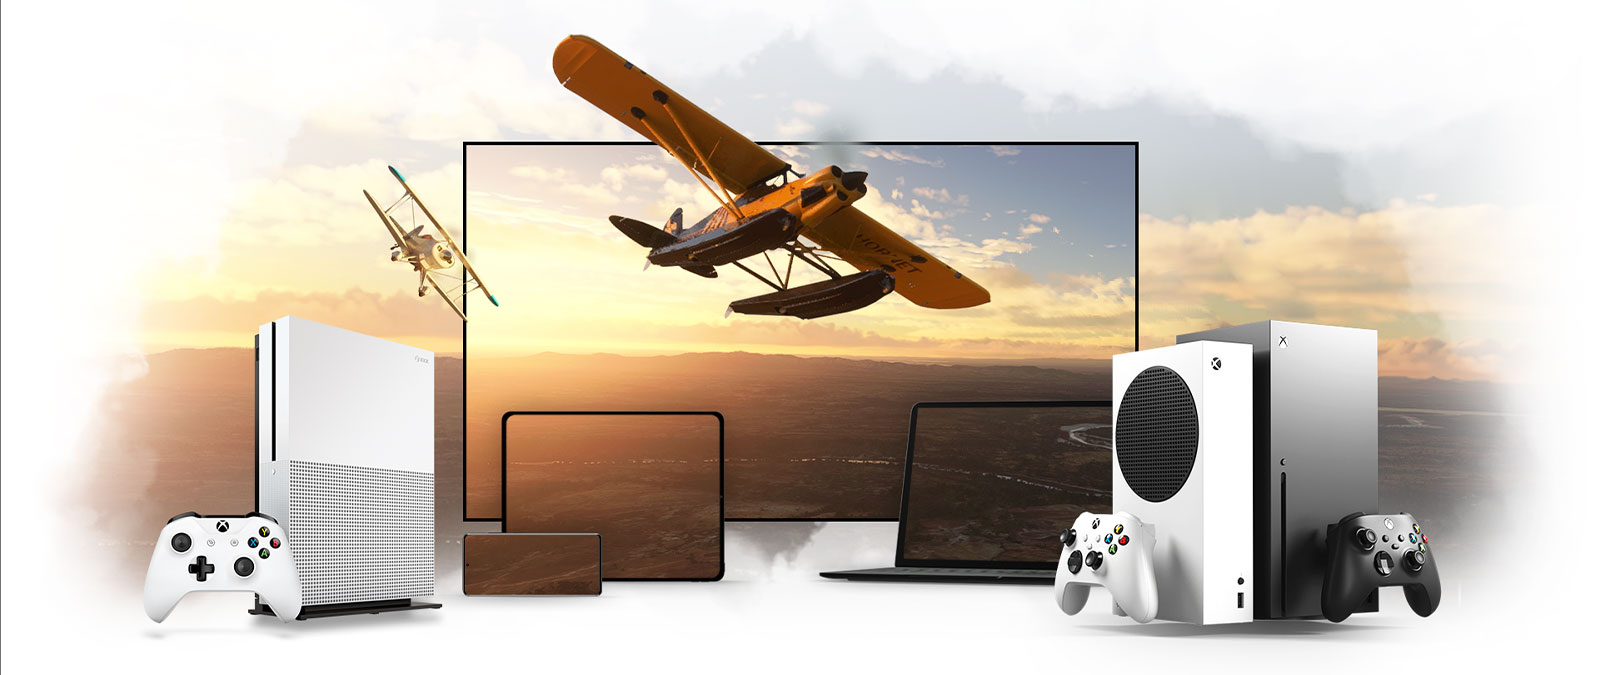 Una colección de dispositivos, entre los que se incluyen un televisor y las consolas Xbox One y Xbox Series X, con un avión de hélices que se aleja por el horizonte iluminado por el sol.